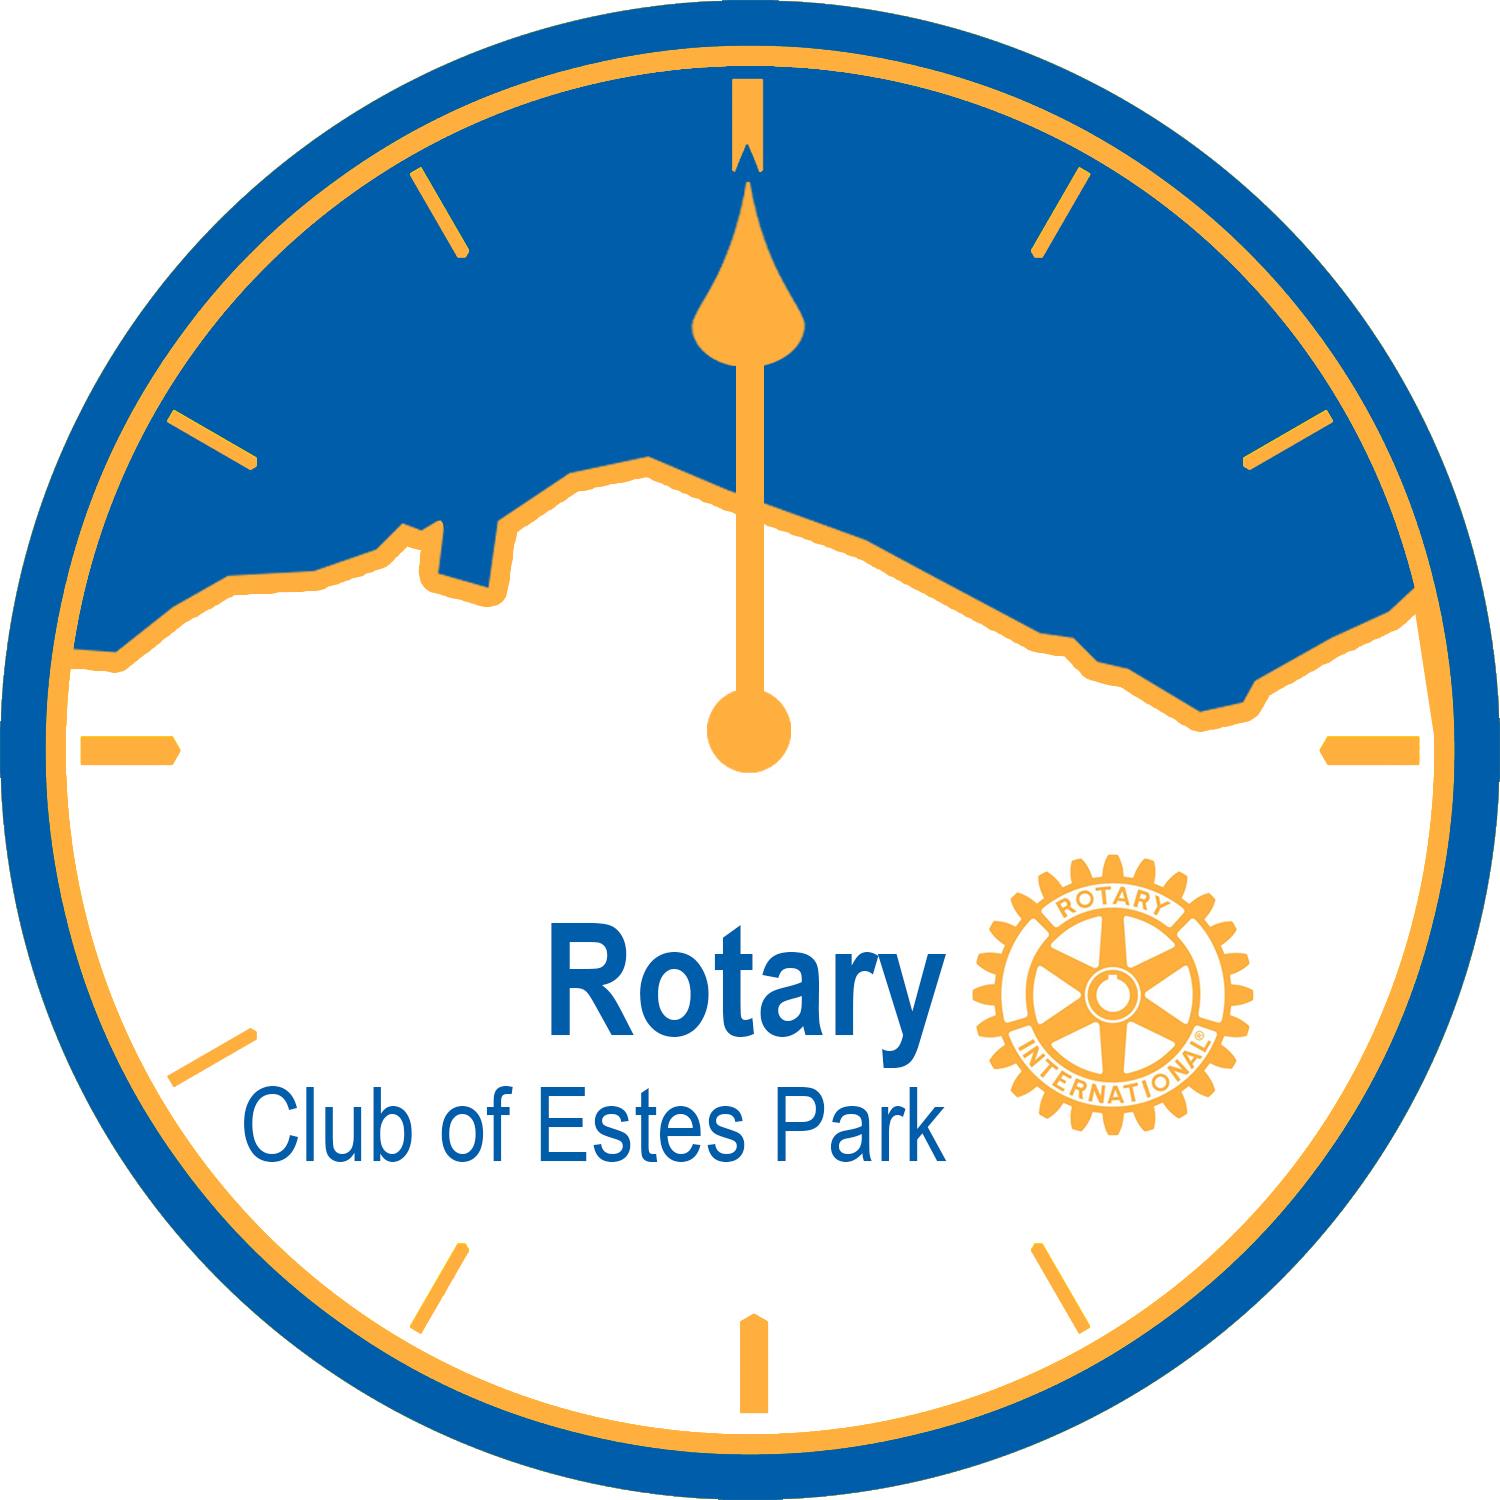 Rotary Club of Estes Park